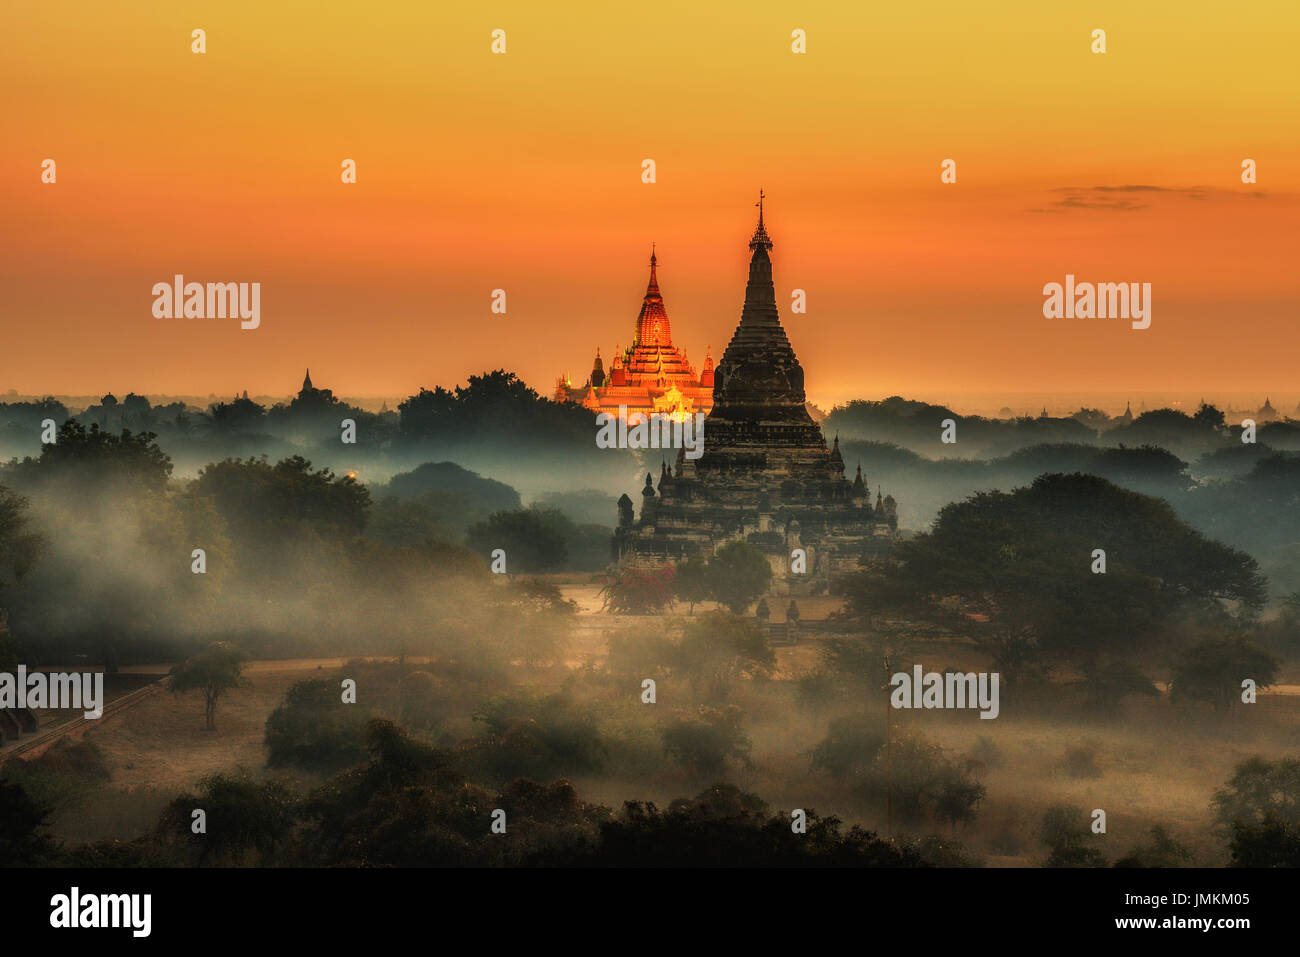 Scenic amanecer encima de bagan en Myanmar. Bagan es una antigua ciudad con miles de templos y estupas budistas histórico. Foto de stock